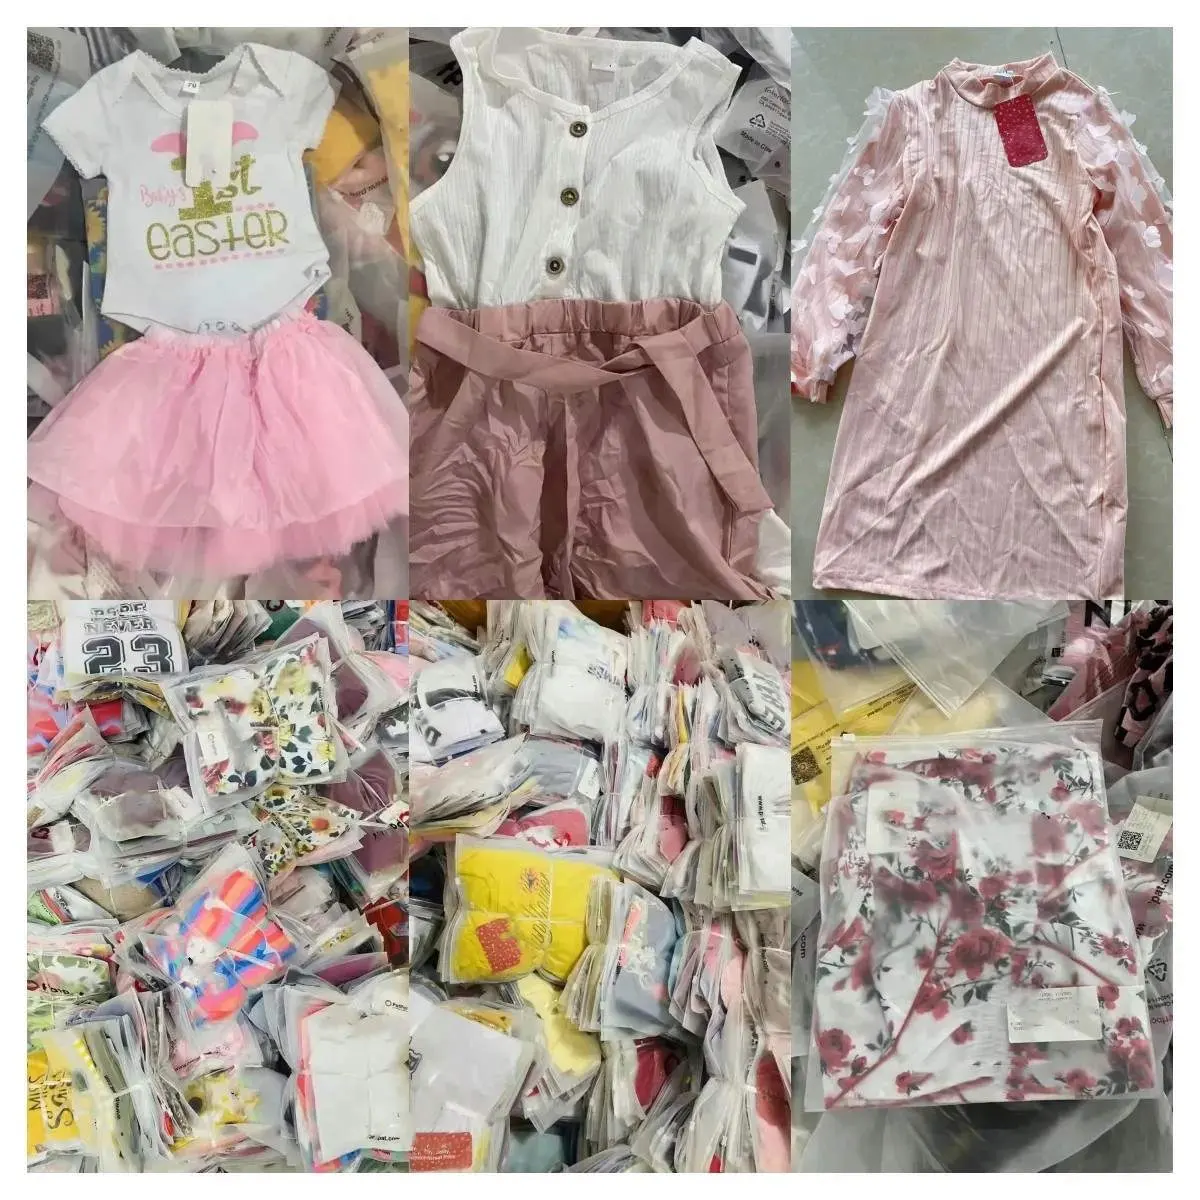 ملابس صيفية للأطفال للبيع بالجملة من مخزون أطفال للبنات والأولاد من عمر 0 إلى 10 سنوات مجموعات ملابس متنوعة للأطفال